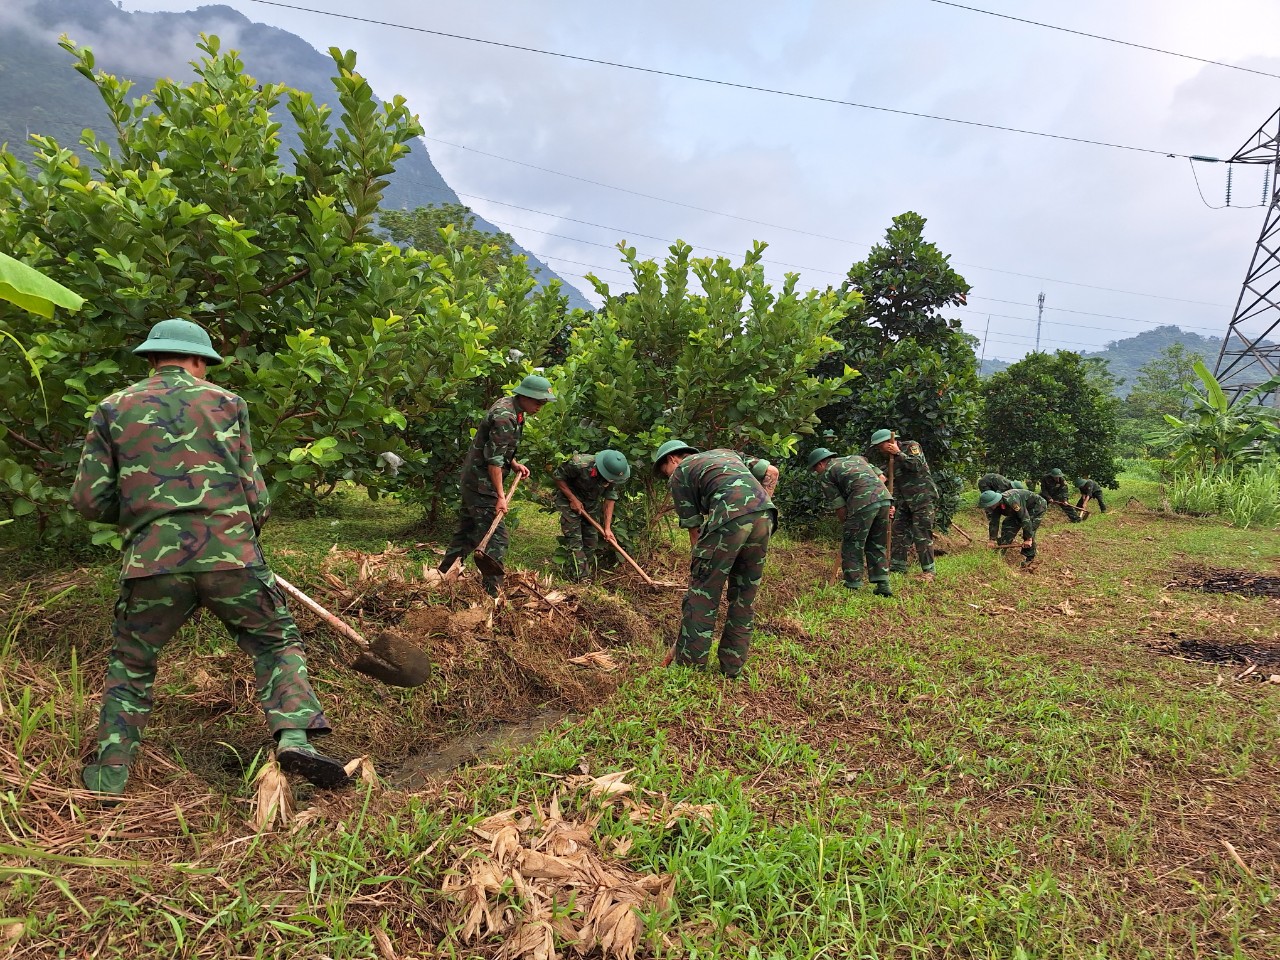 UBND phường Ngọc Hà hỗ trợ nhân dân thực hiện cải tạo vườn tạp